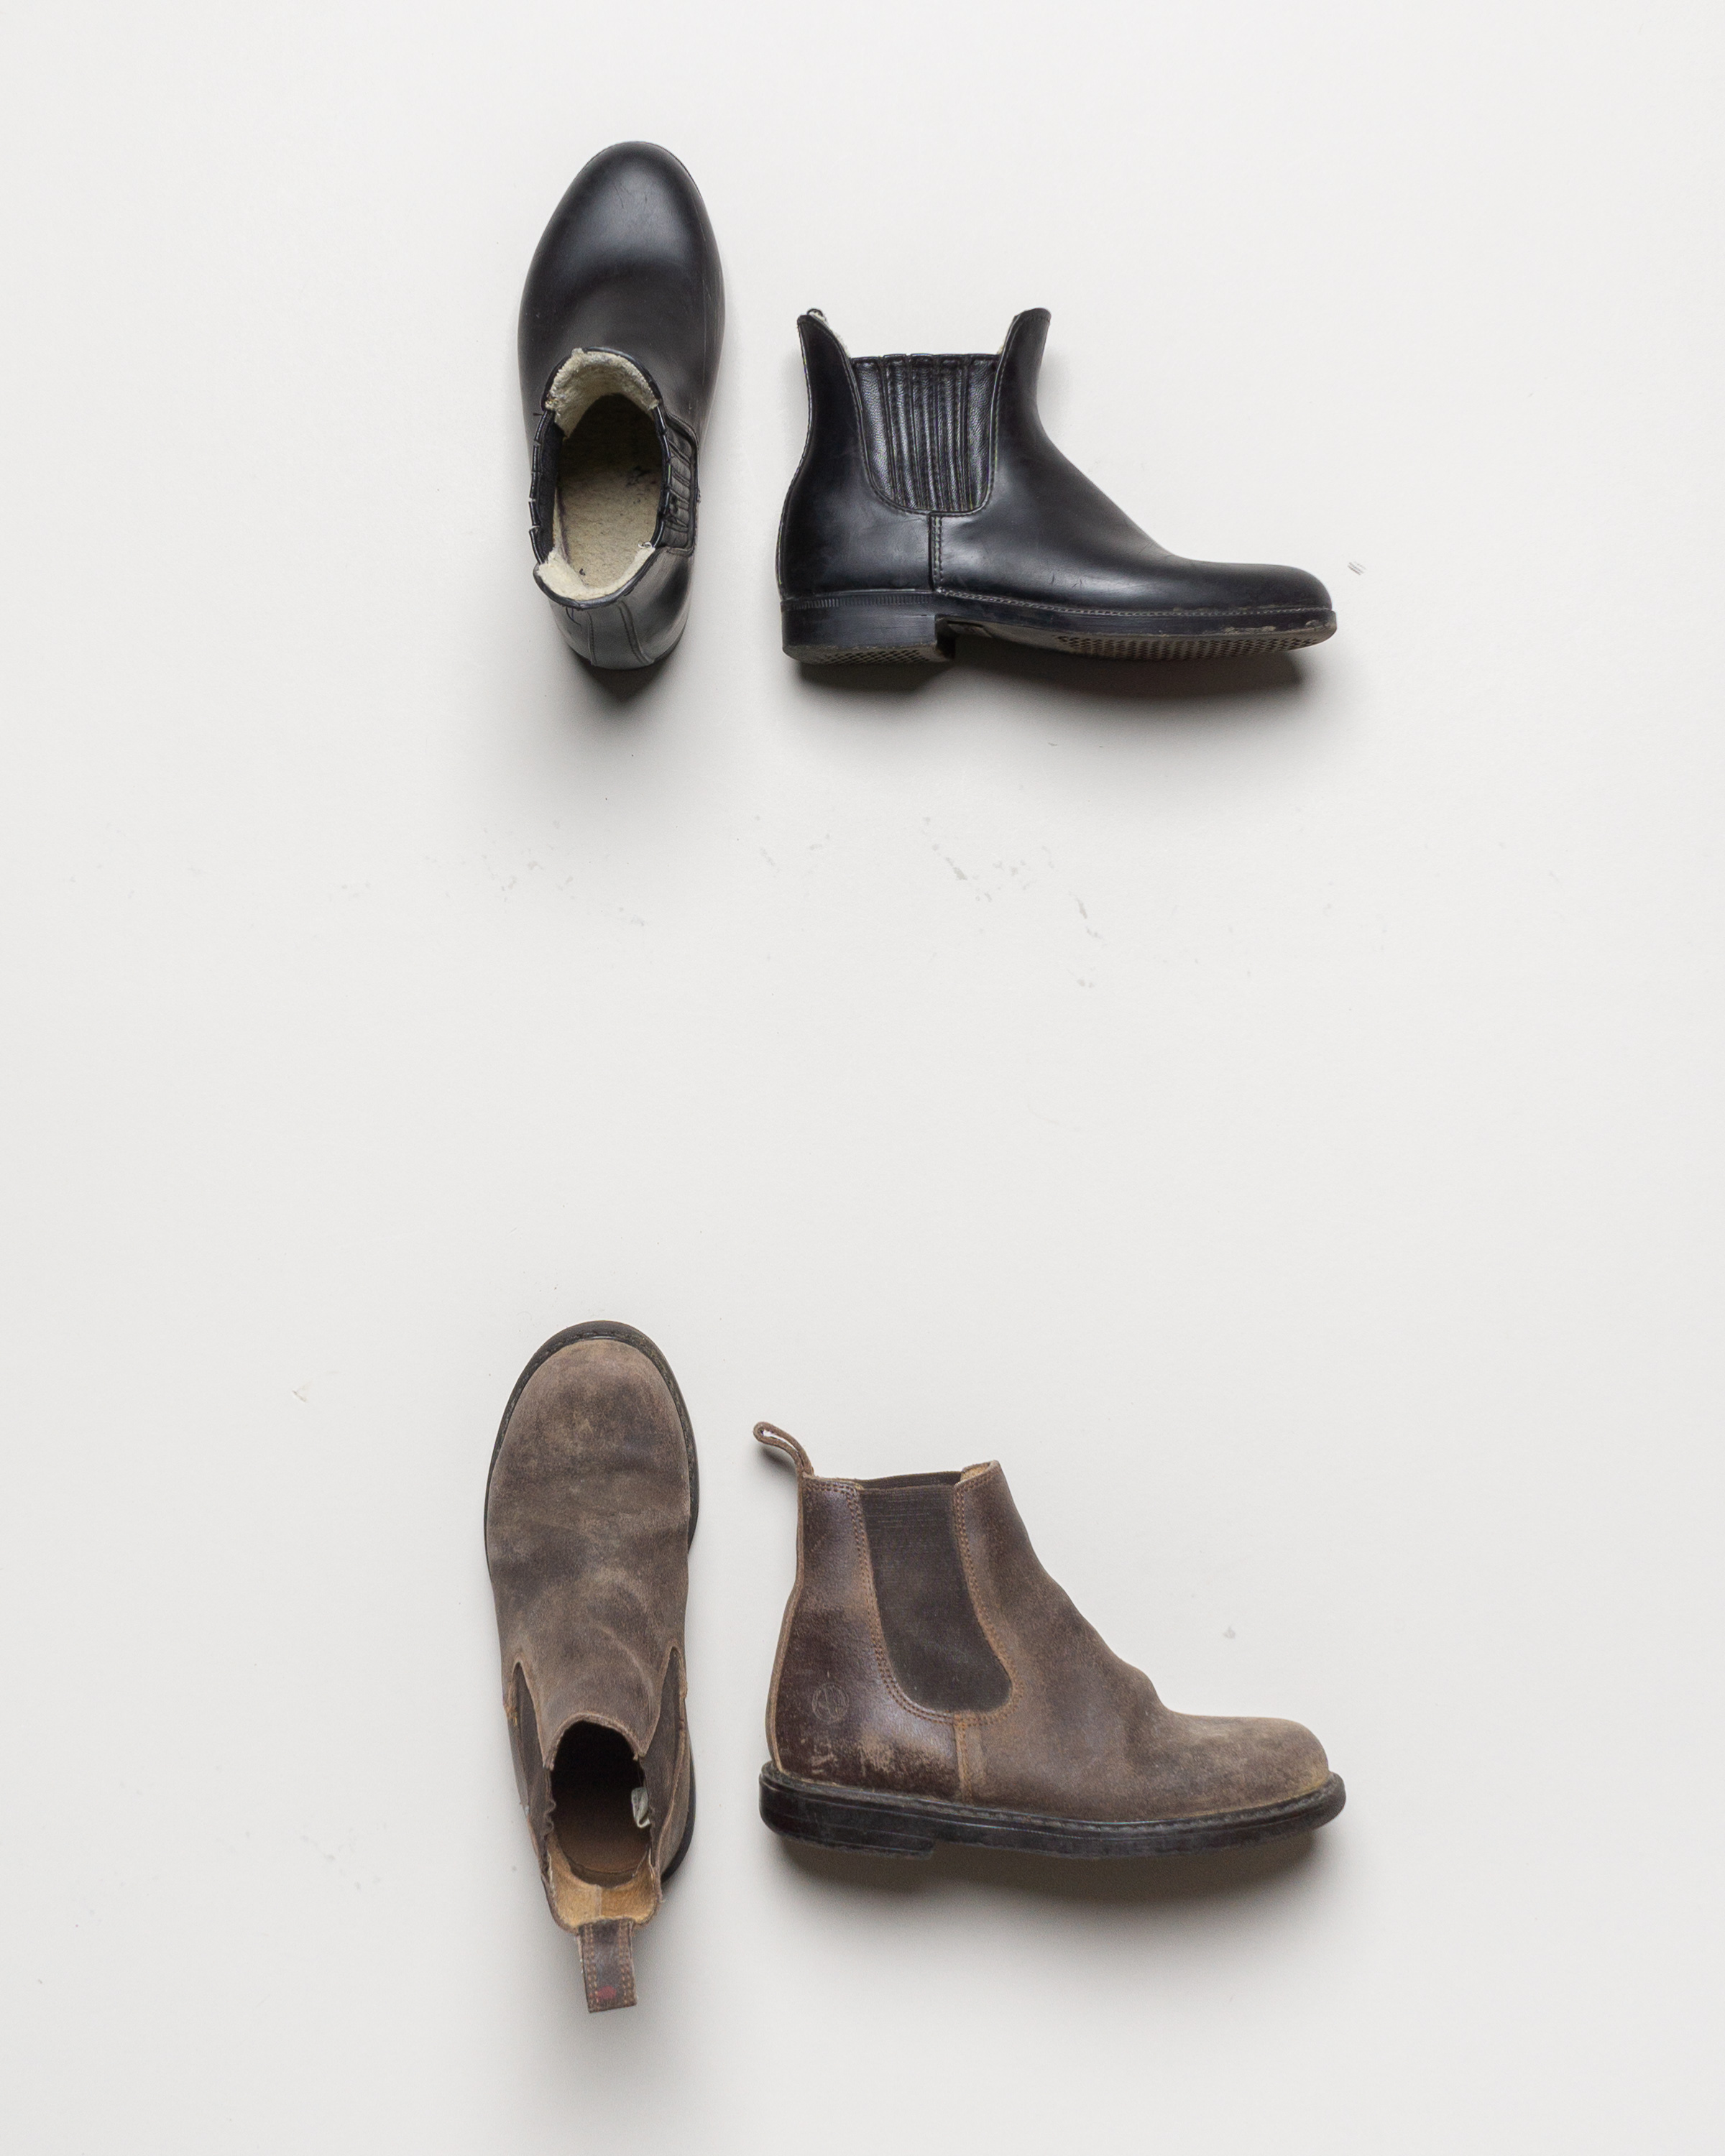 1 Paar Stiefeletten Gr. 30 – Reitstiefel Boots braun schwarz